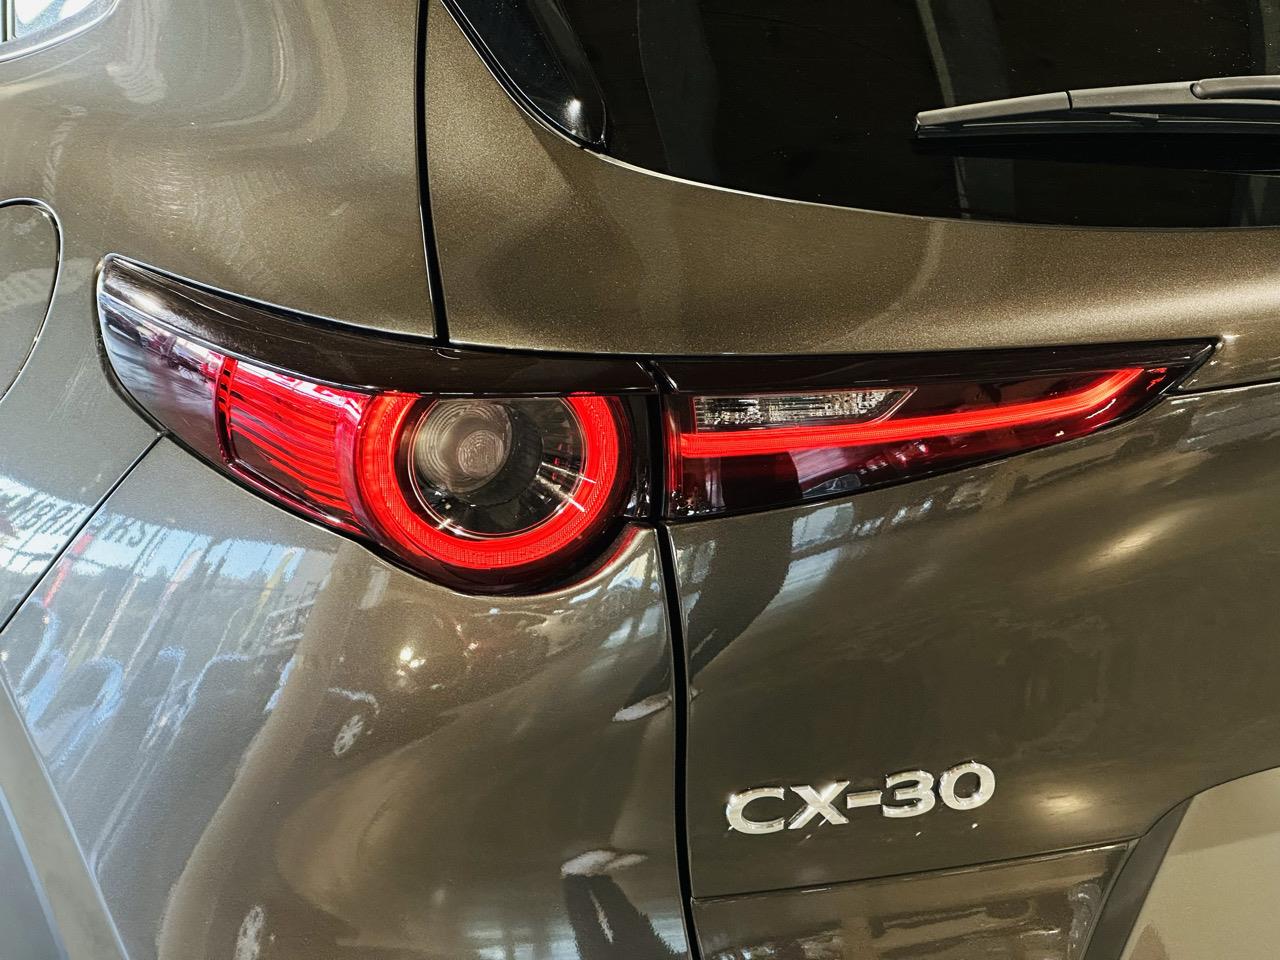 2019 Mazda CX-30